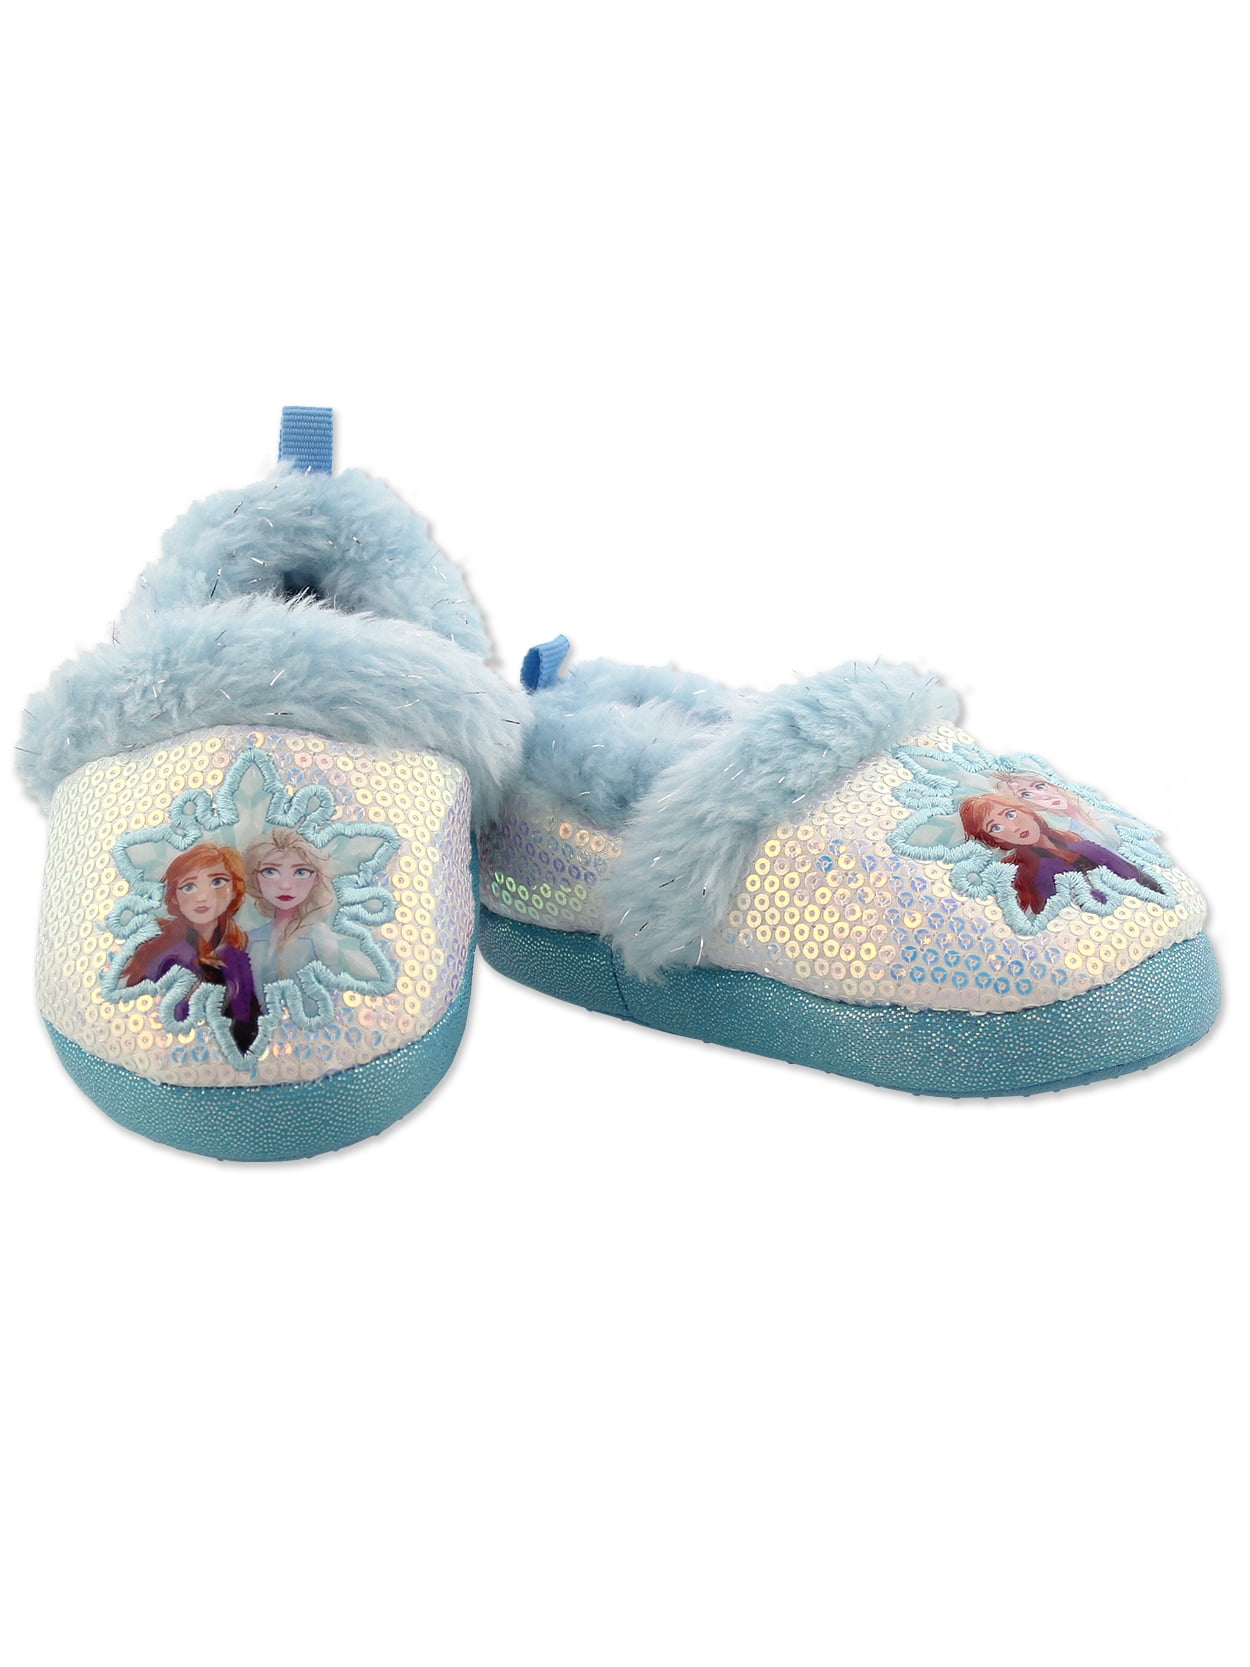 Disney Frozen Childrens Slipper Socks Elsa and Anna 2 Pack 